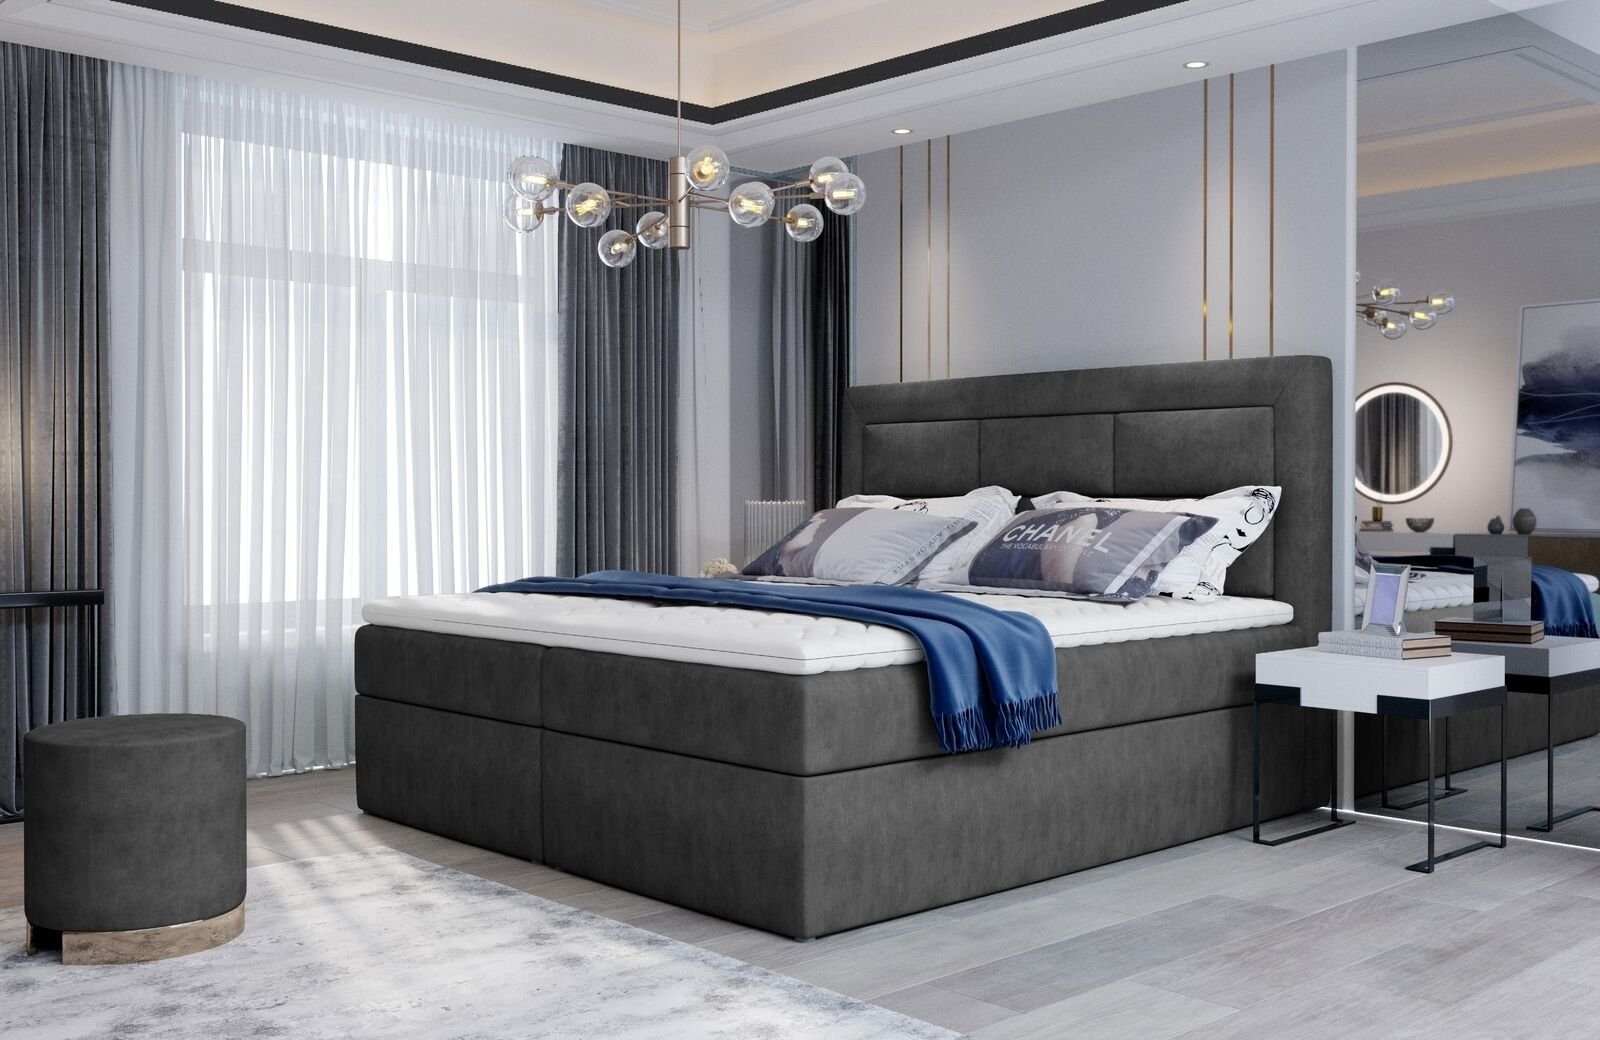 JVmoebel Bett, Textil Design Bett Ehe Modernes Gestell Luxus Doppel Betten